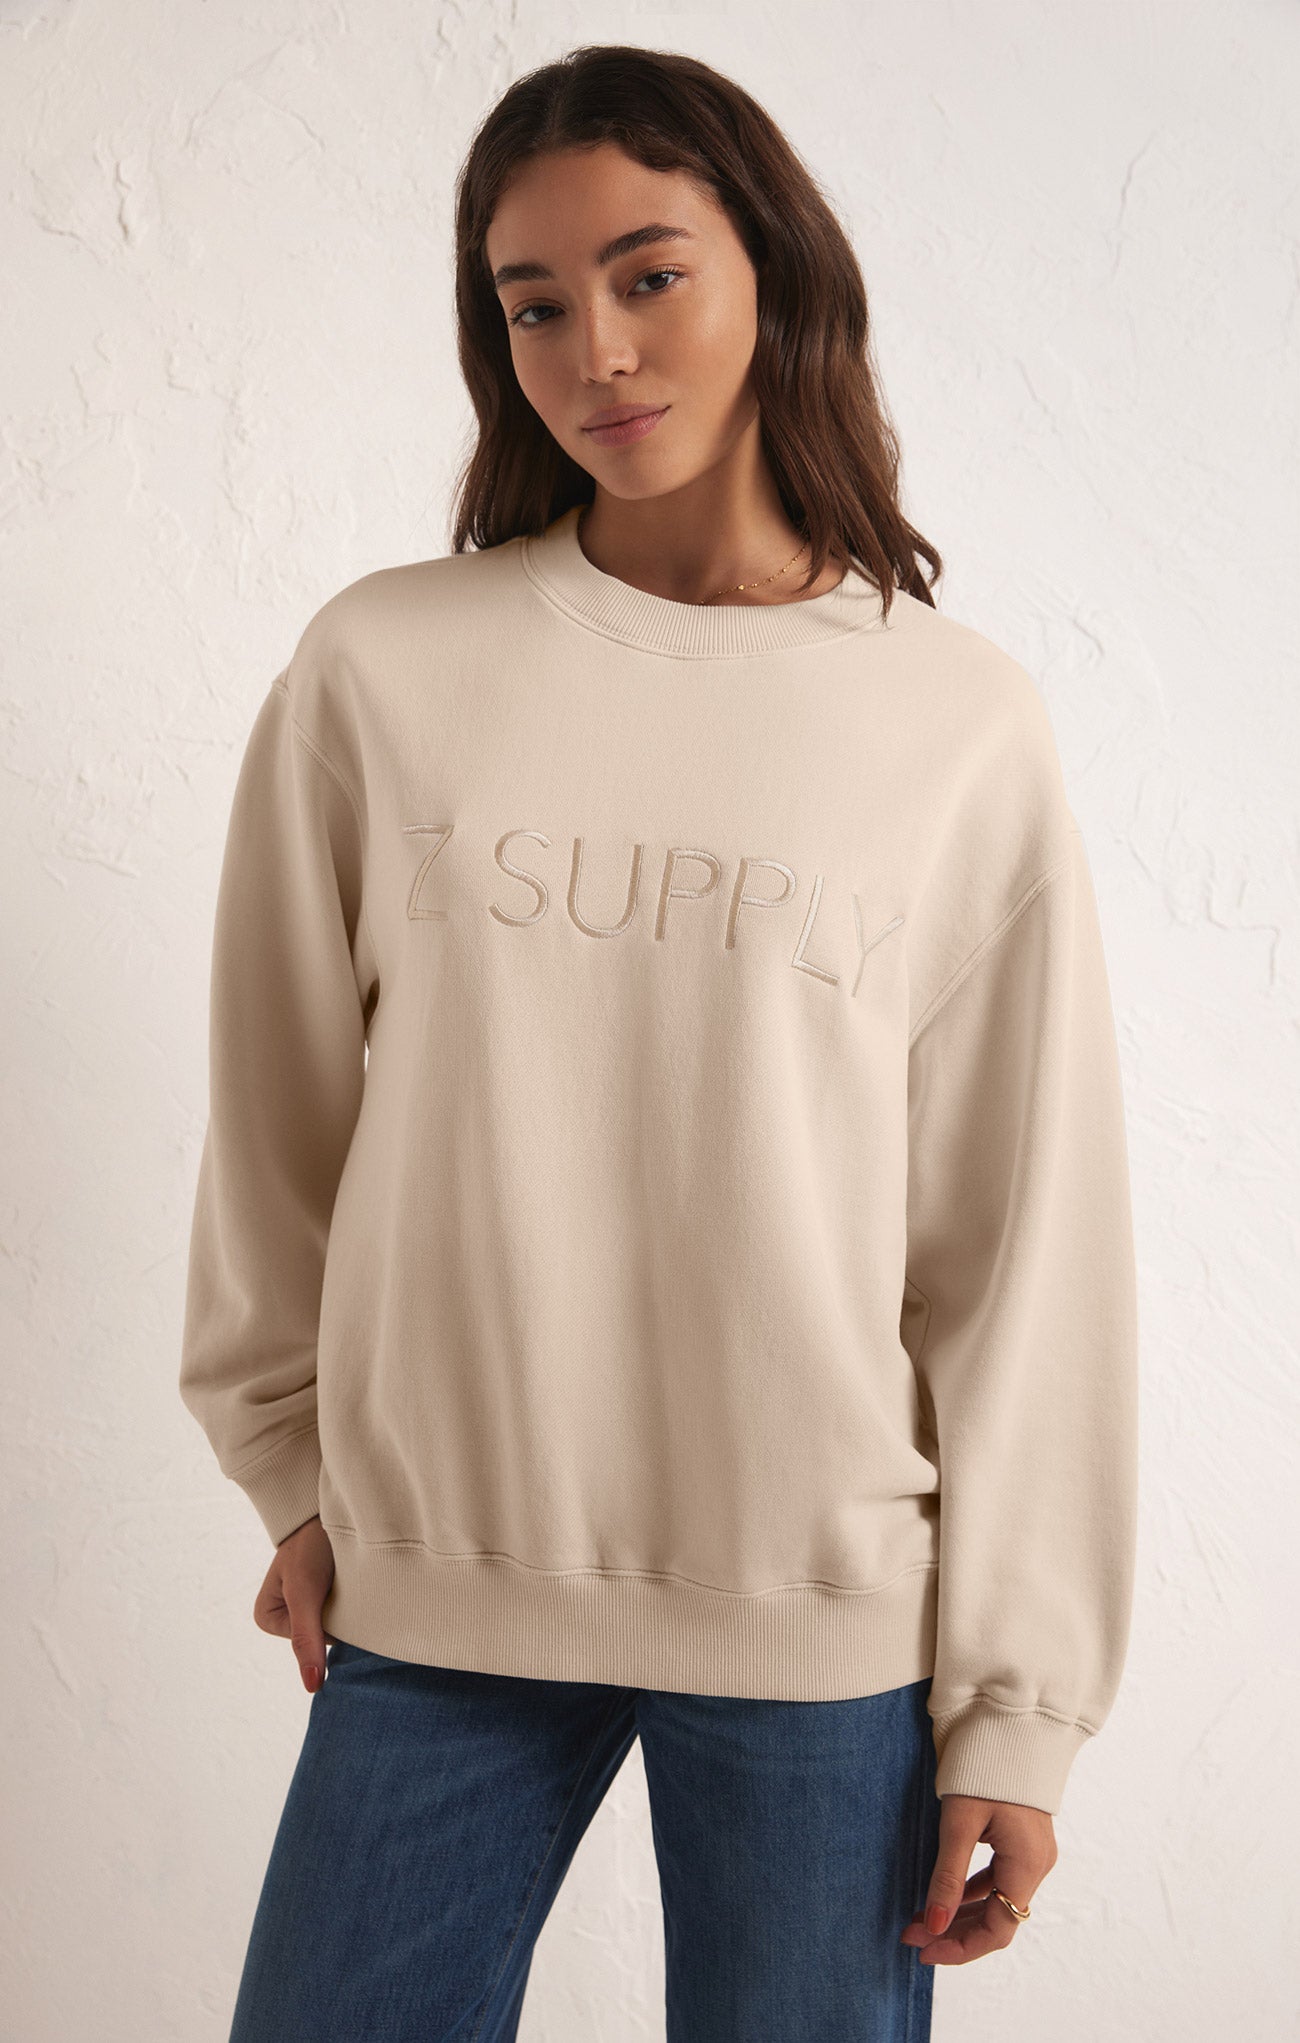 Syd Logo Sweatshirt – Z SUPPLY